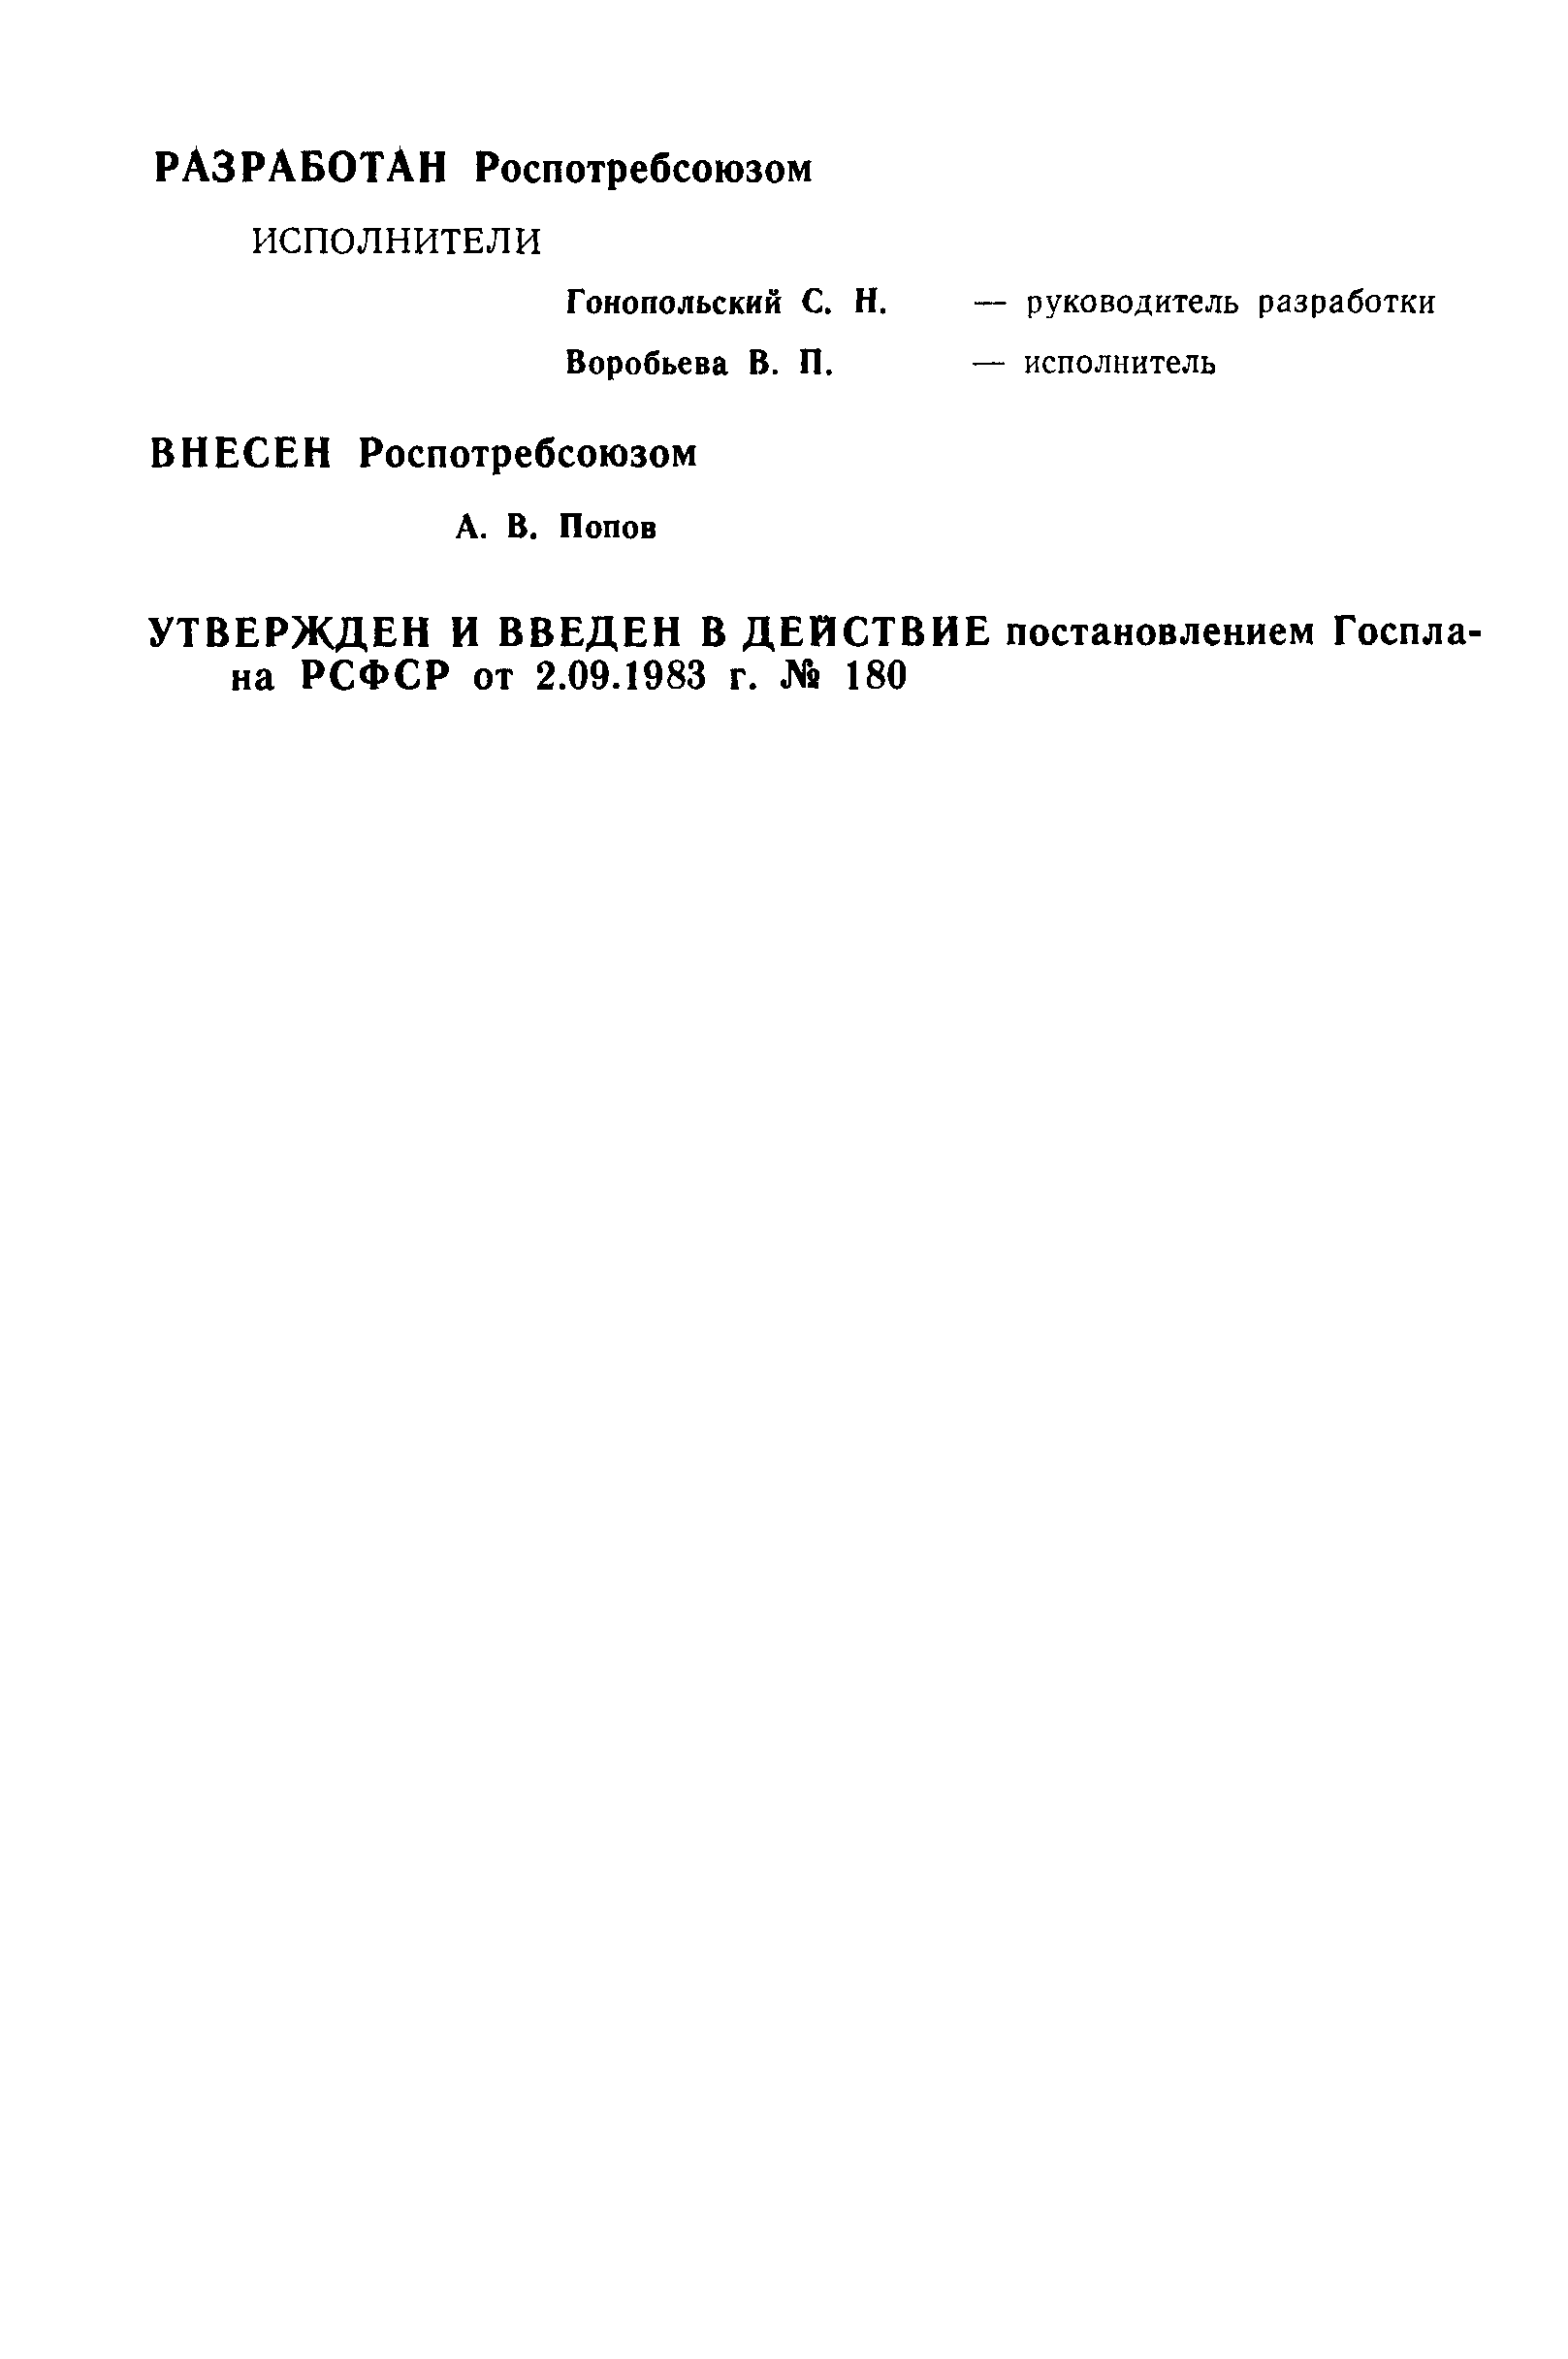 РСТ РСФСР 705-83